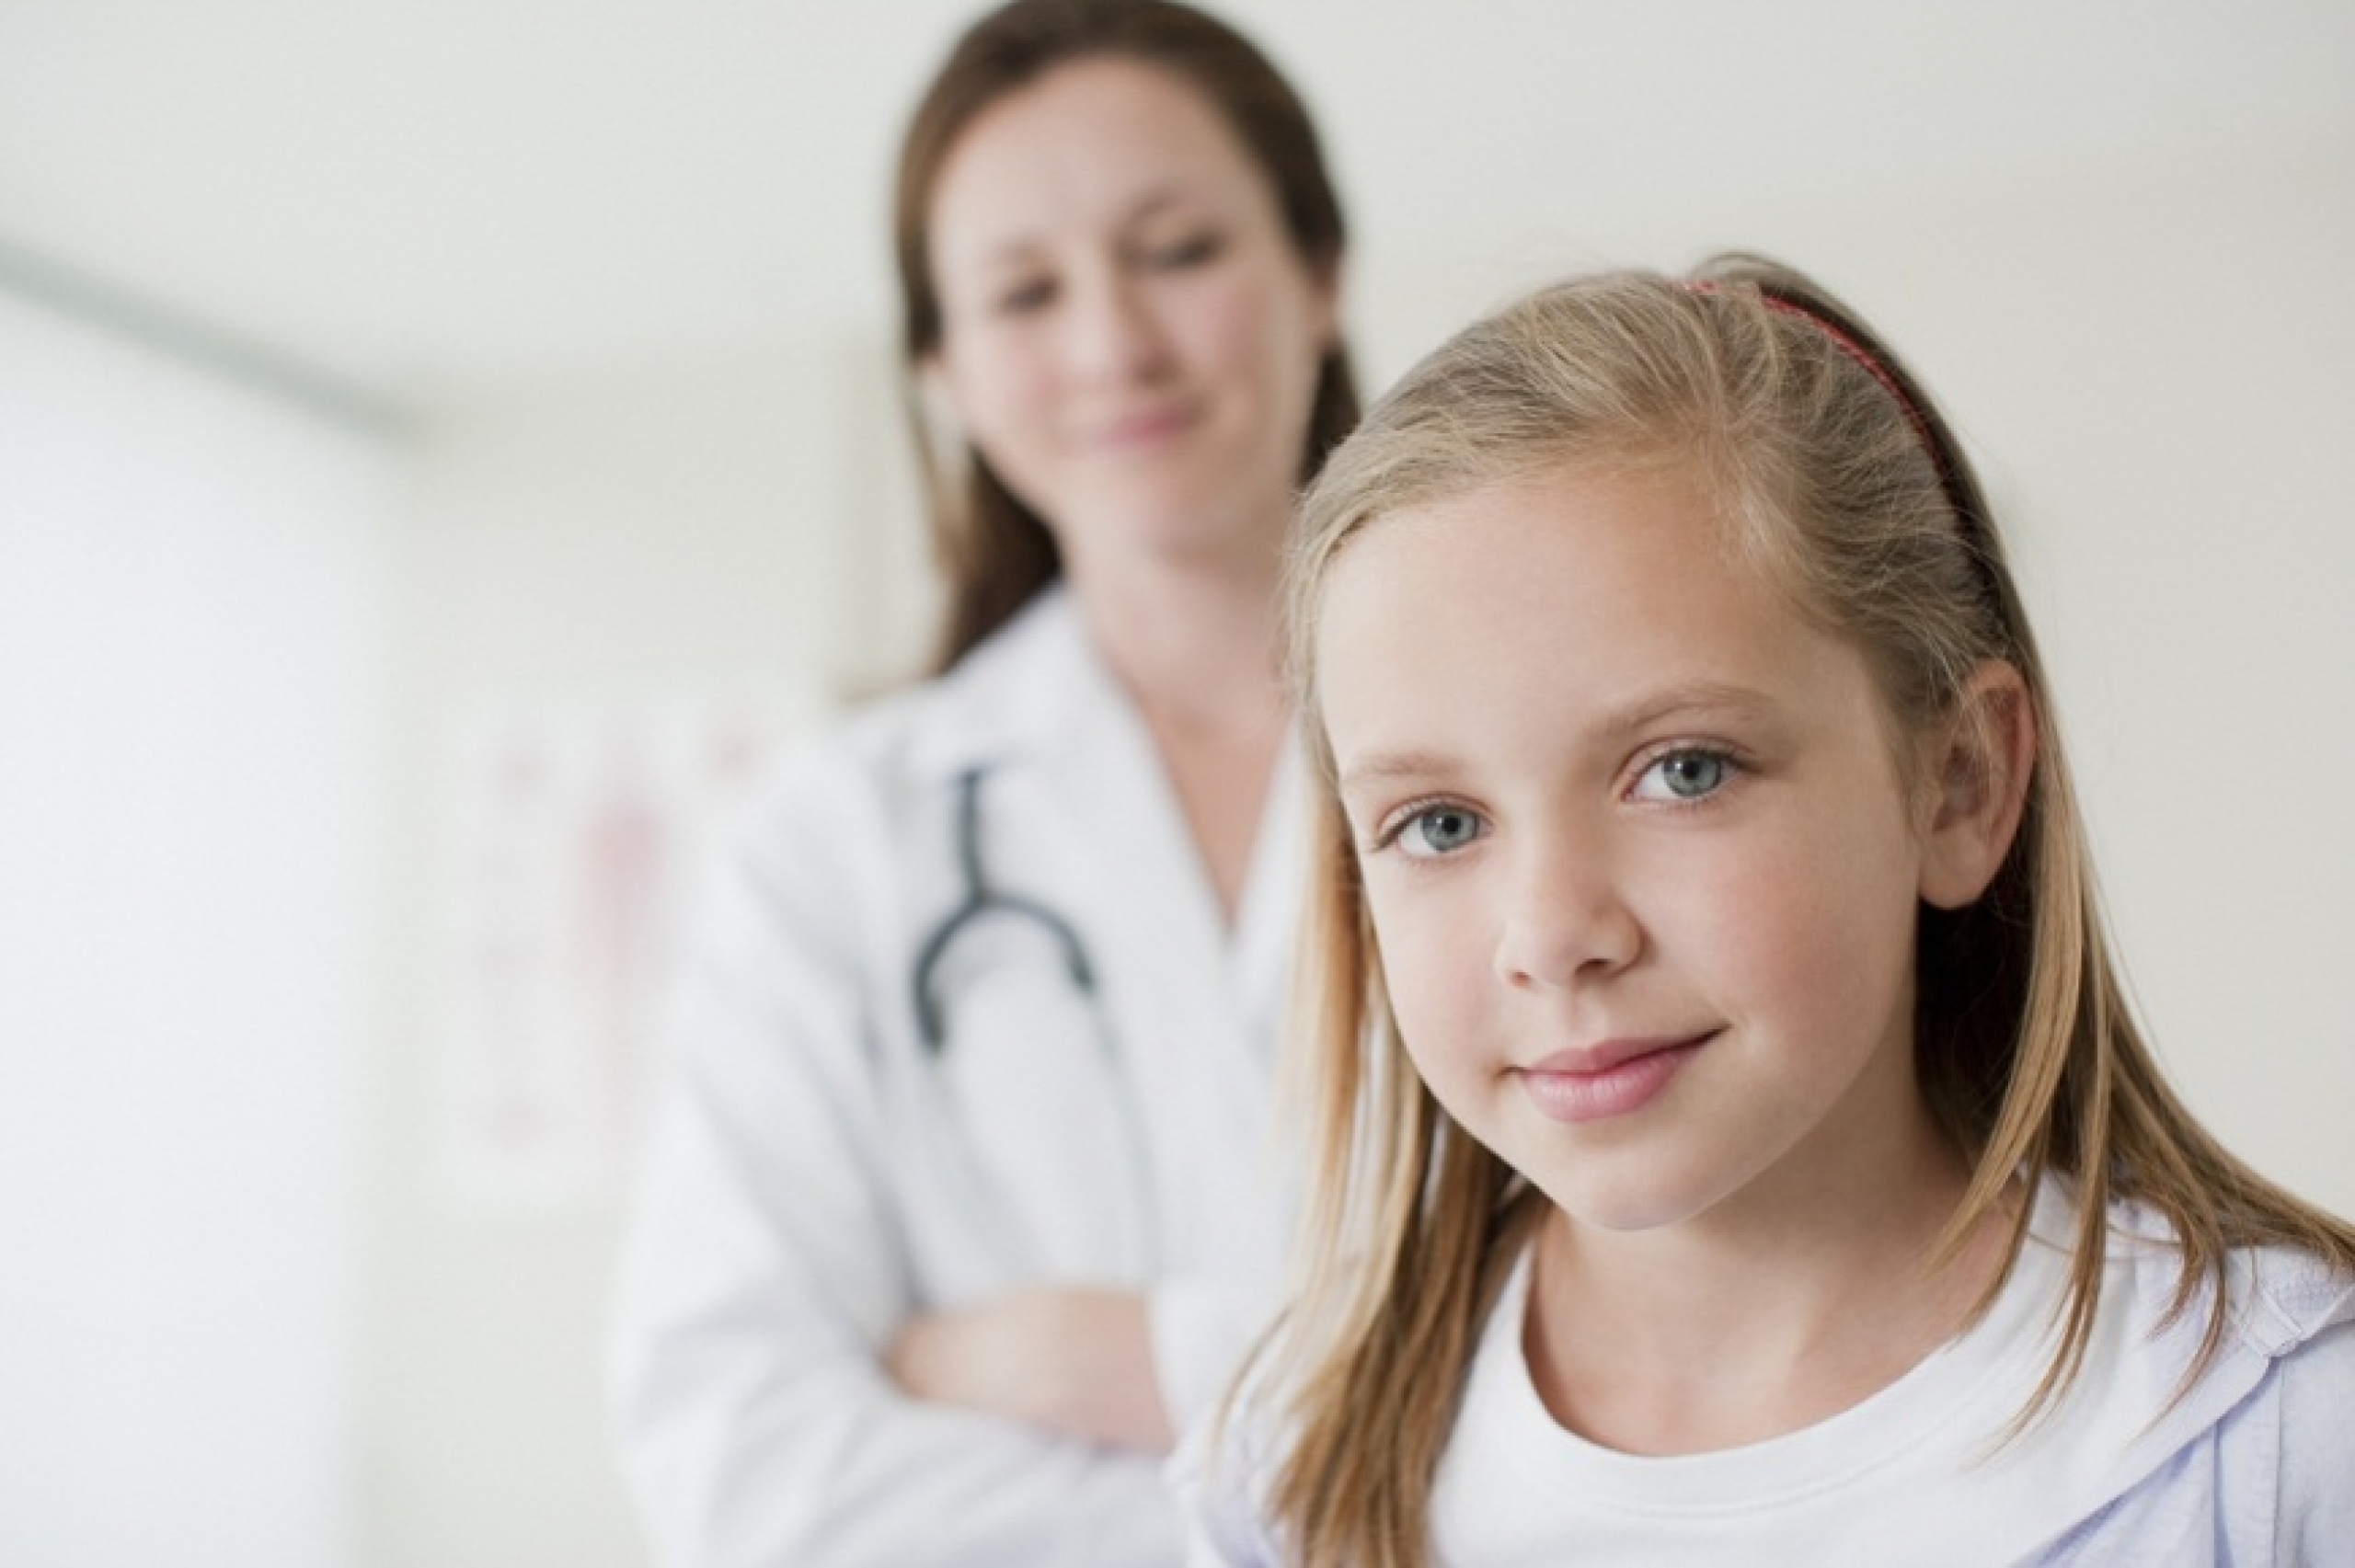 Детский гинеколог: зачем он нужен